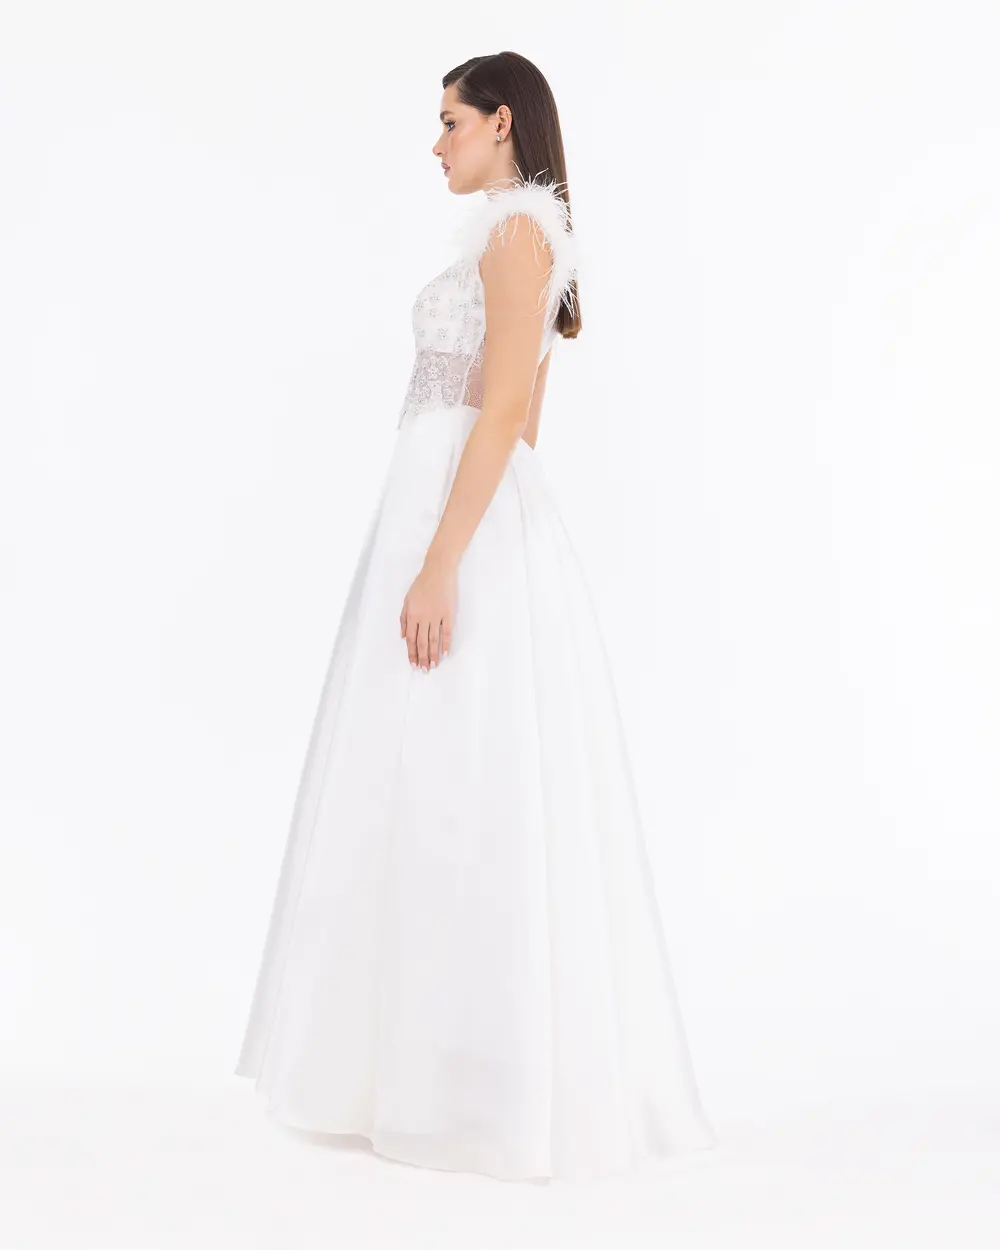 Satin Woven Transparent Detailed Maxi Length Evening Dress